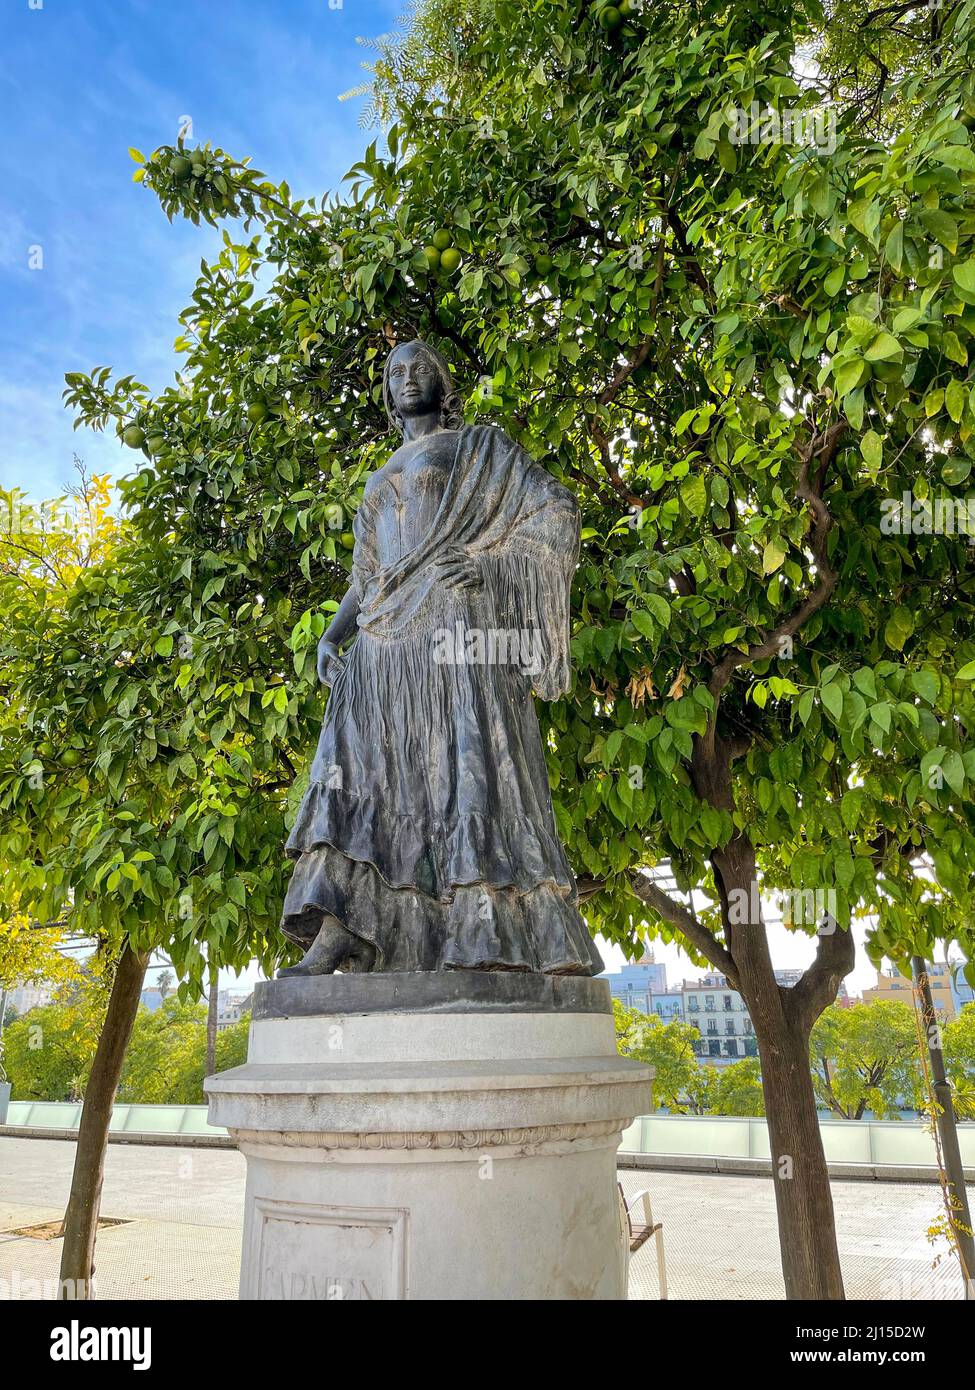 Sculpture en bronze de Carmen, dédiée à la figure de Carmen comme un miroir permanent des idéaux de liberté, inspiré par l'opéra « Carmen » Banque D'Images